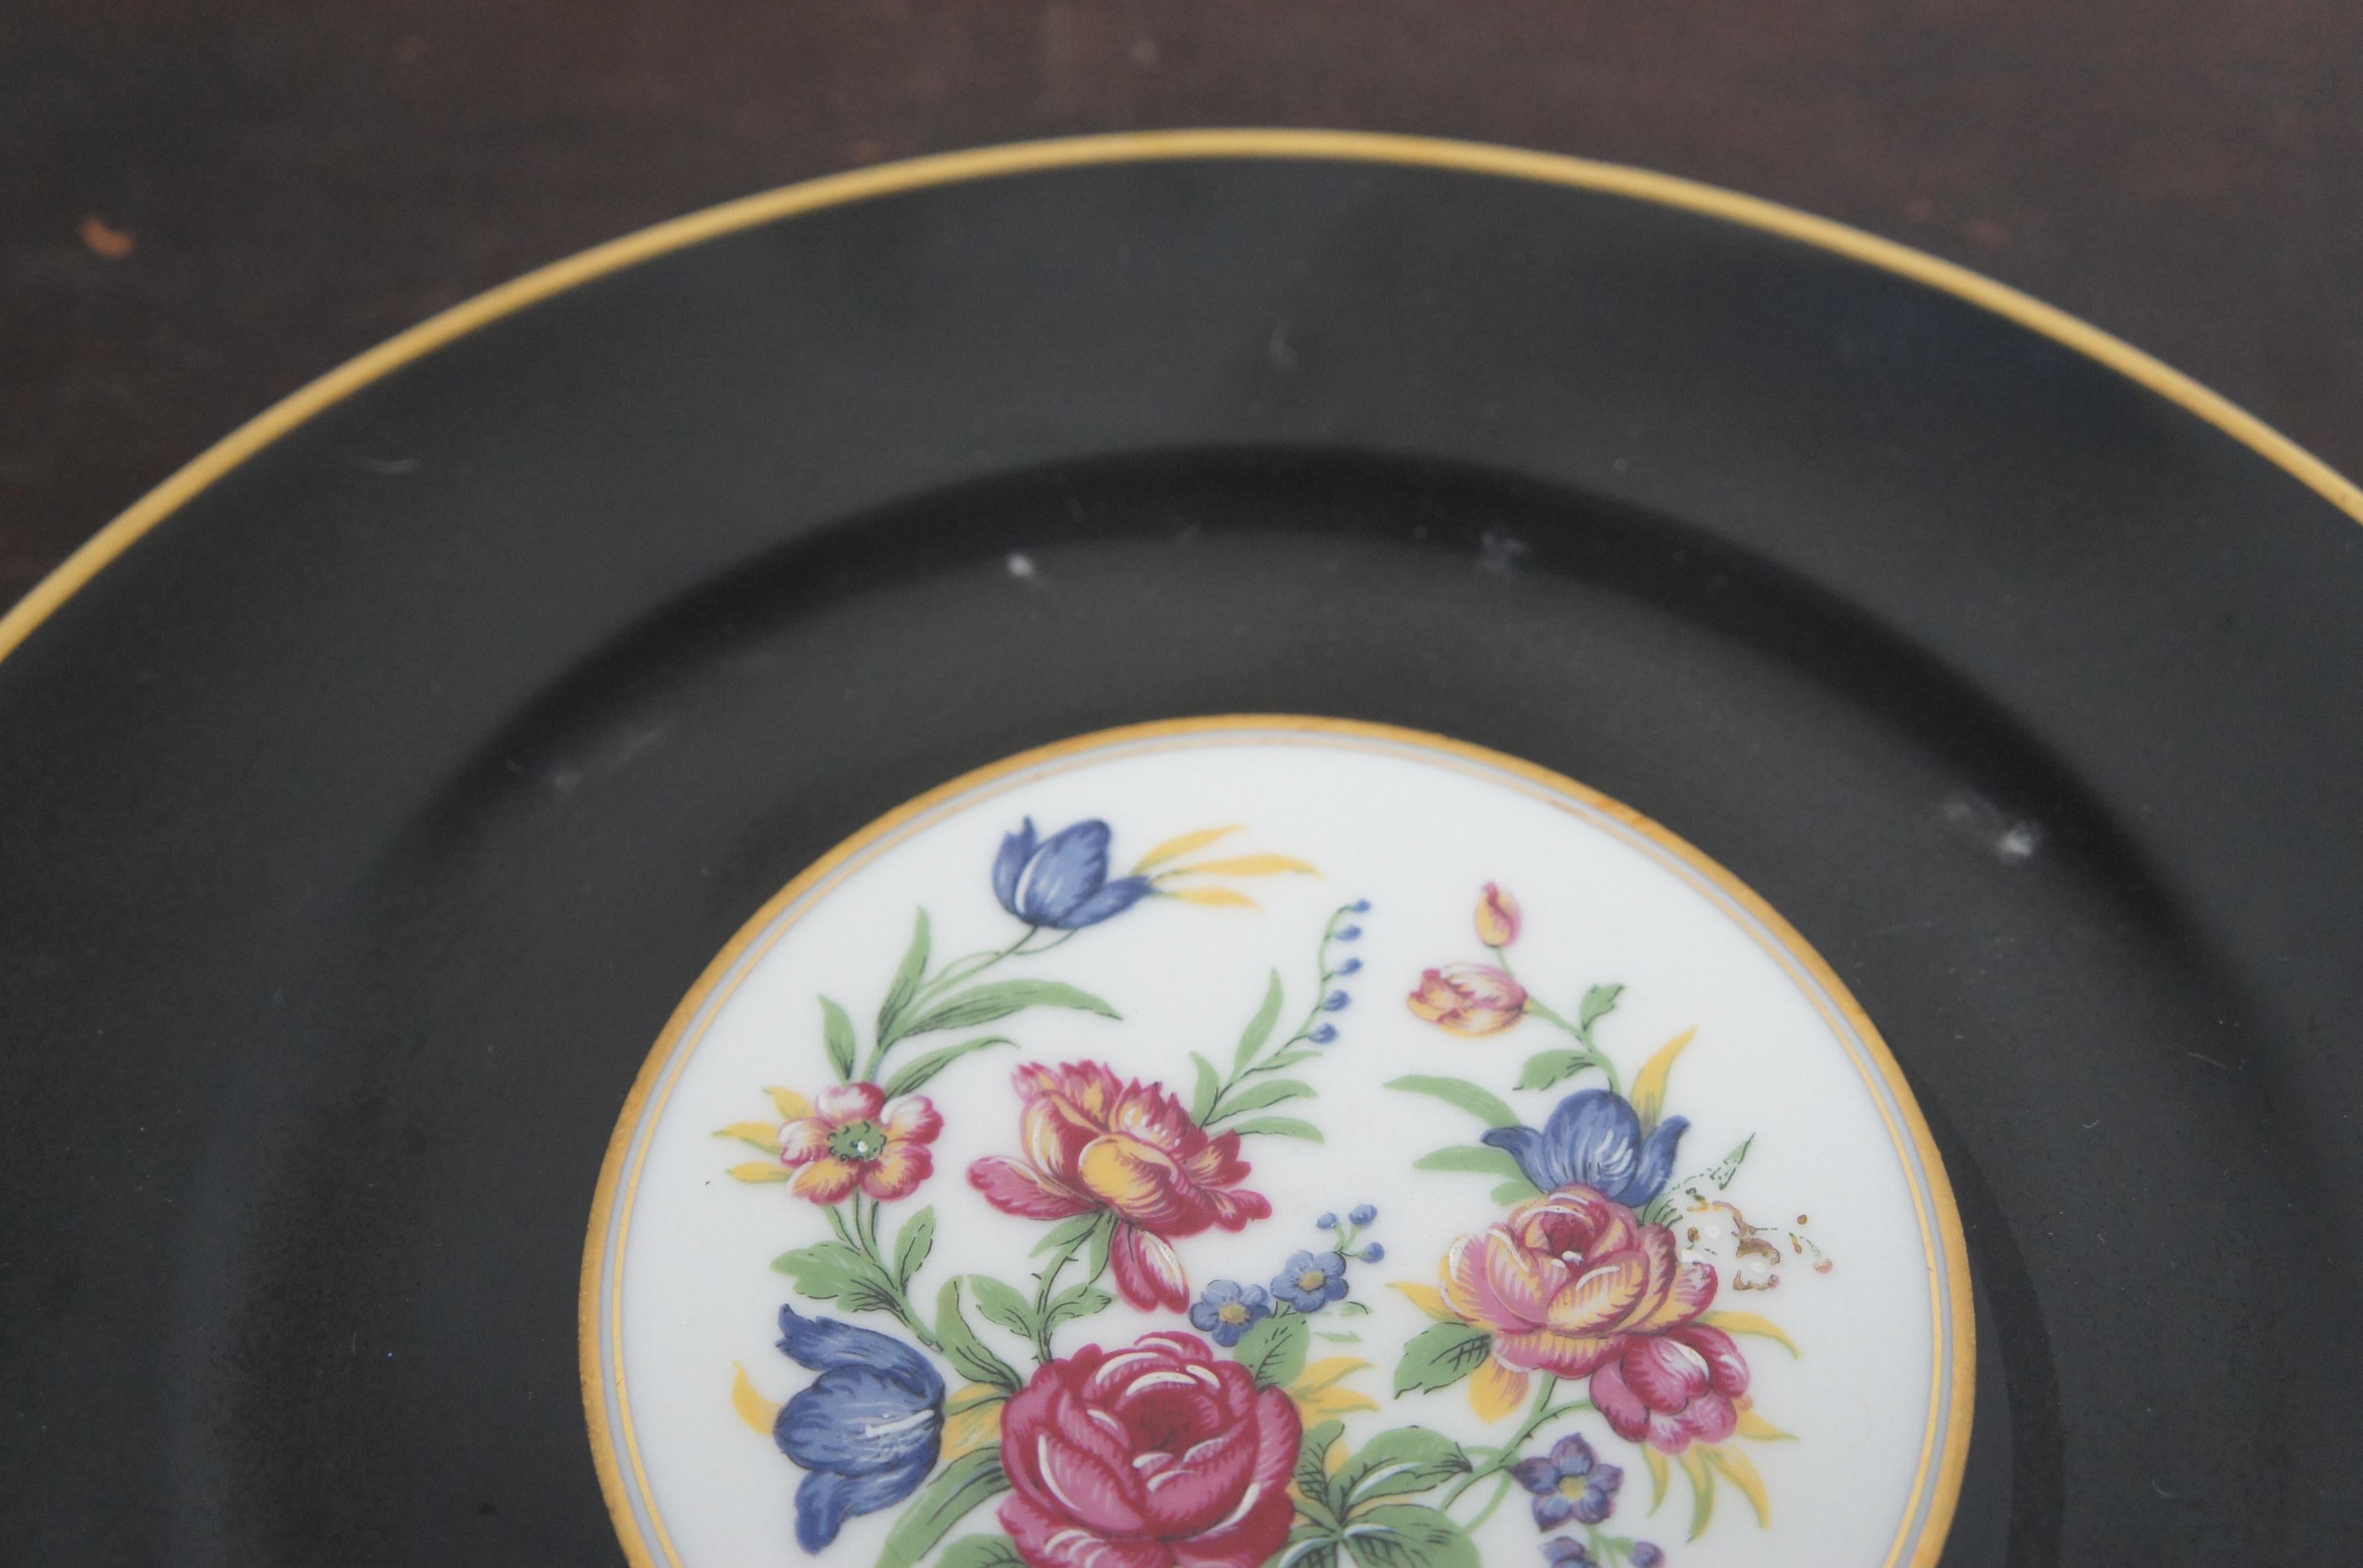 11 L. Bernardaud & Co Limoges France Porcelain Dinner Plates Black Floral 4